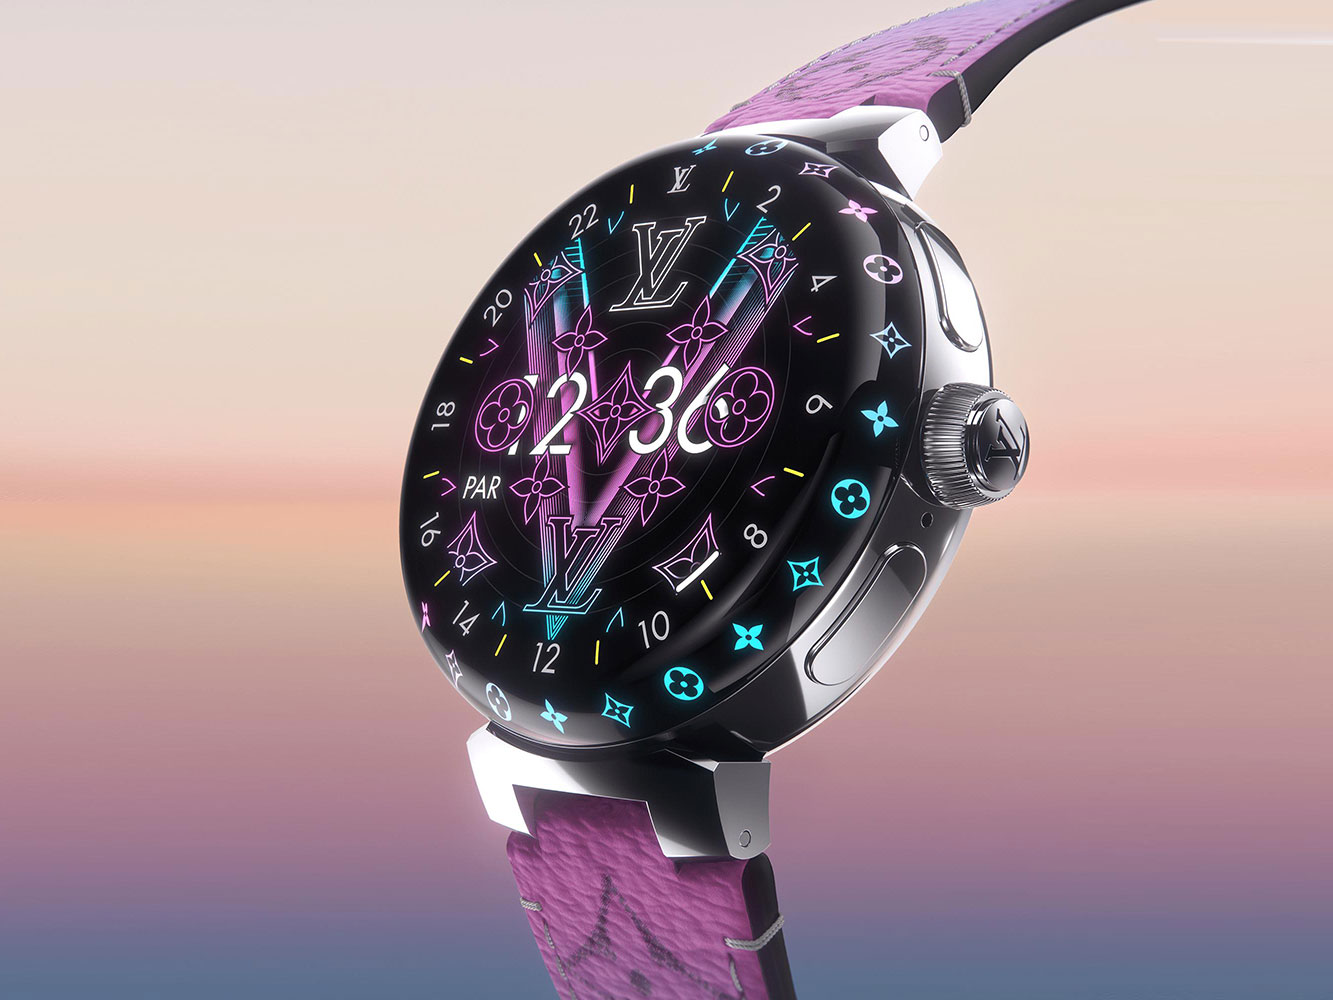 Đây là smartwatch Louis Vuitton mới Phủ sapphire cao cấp quá đẹp